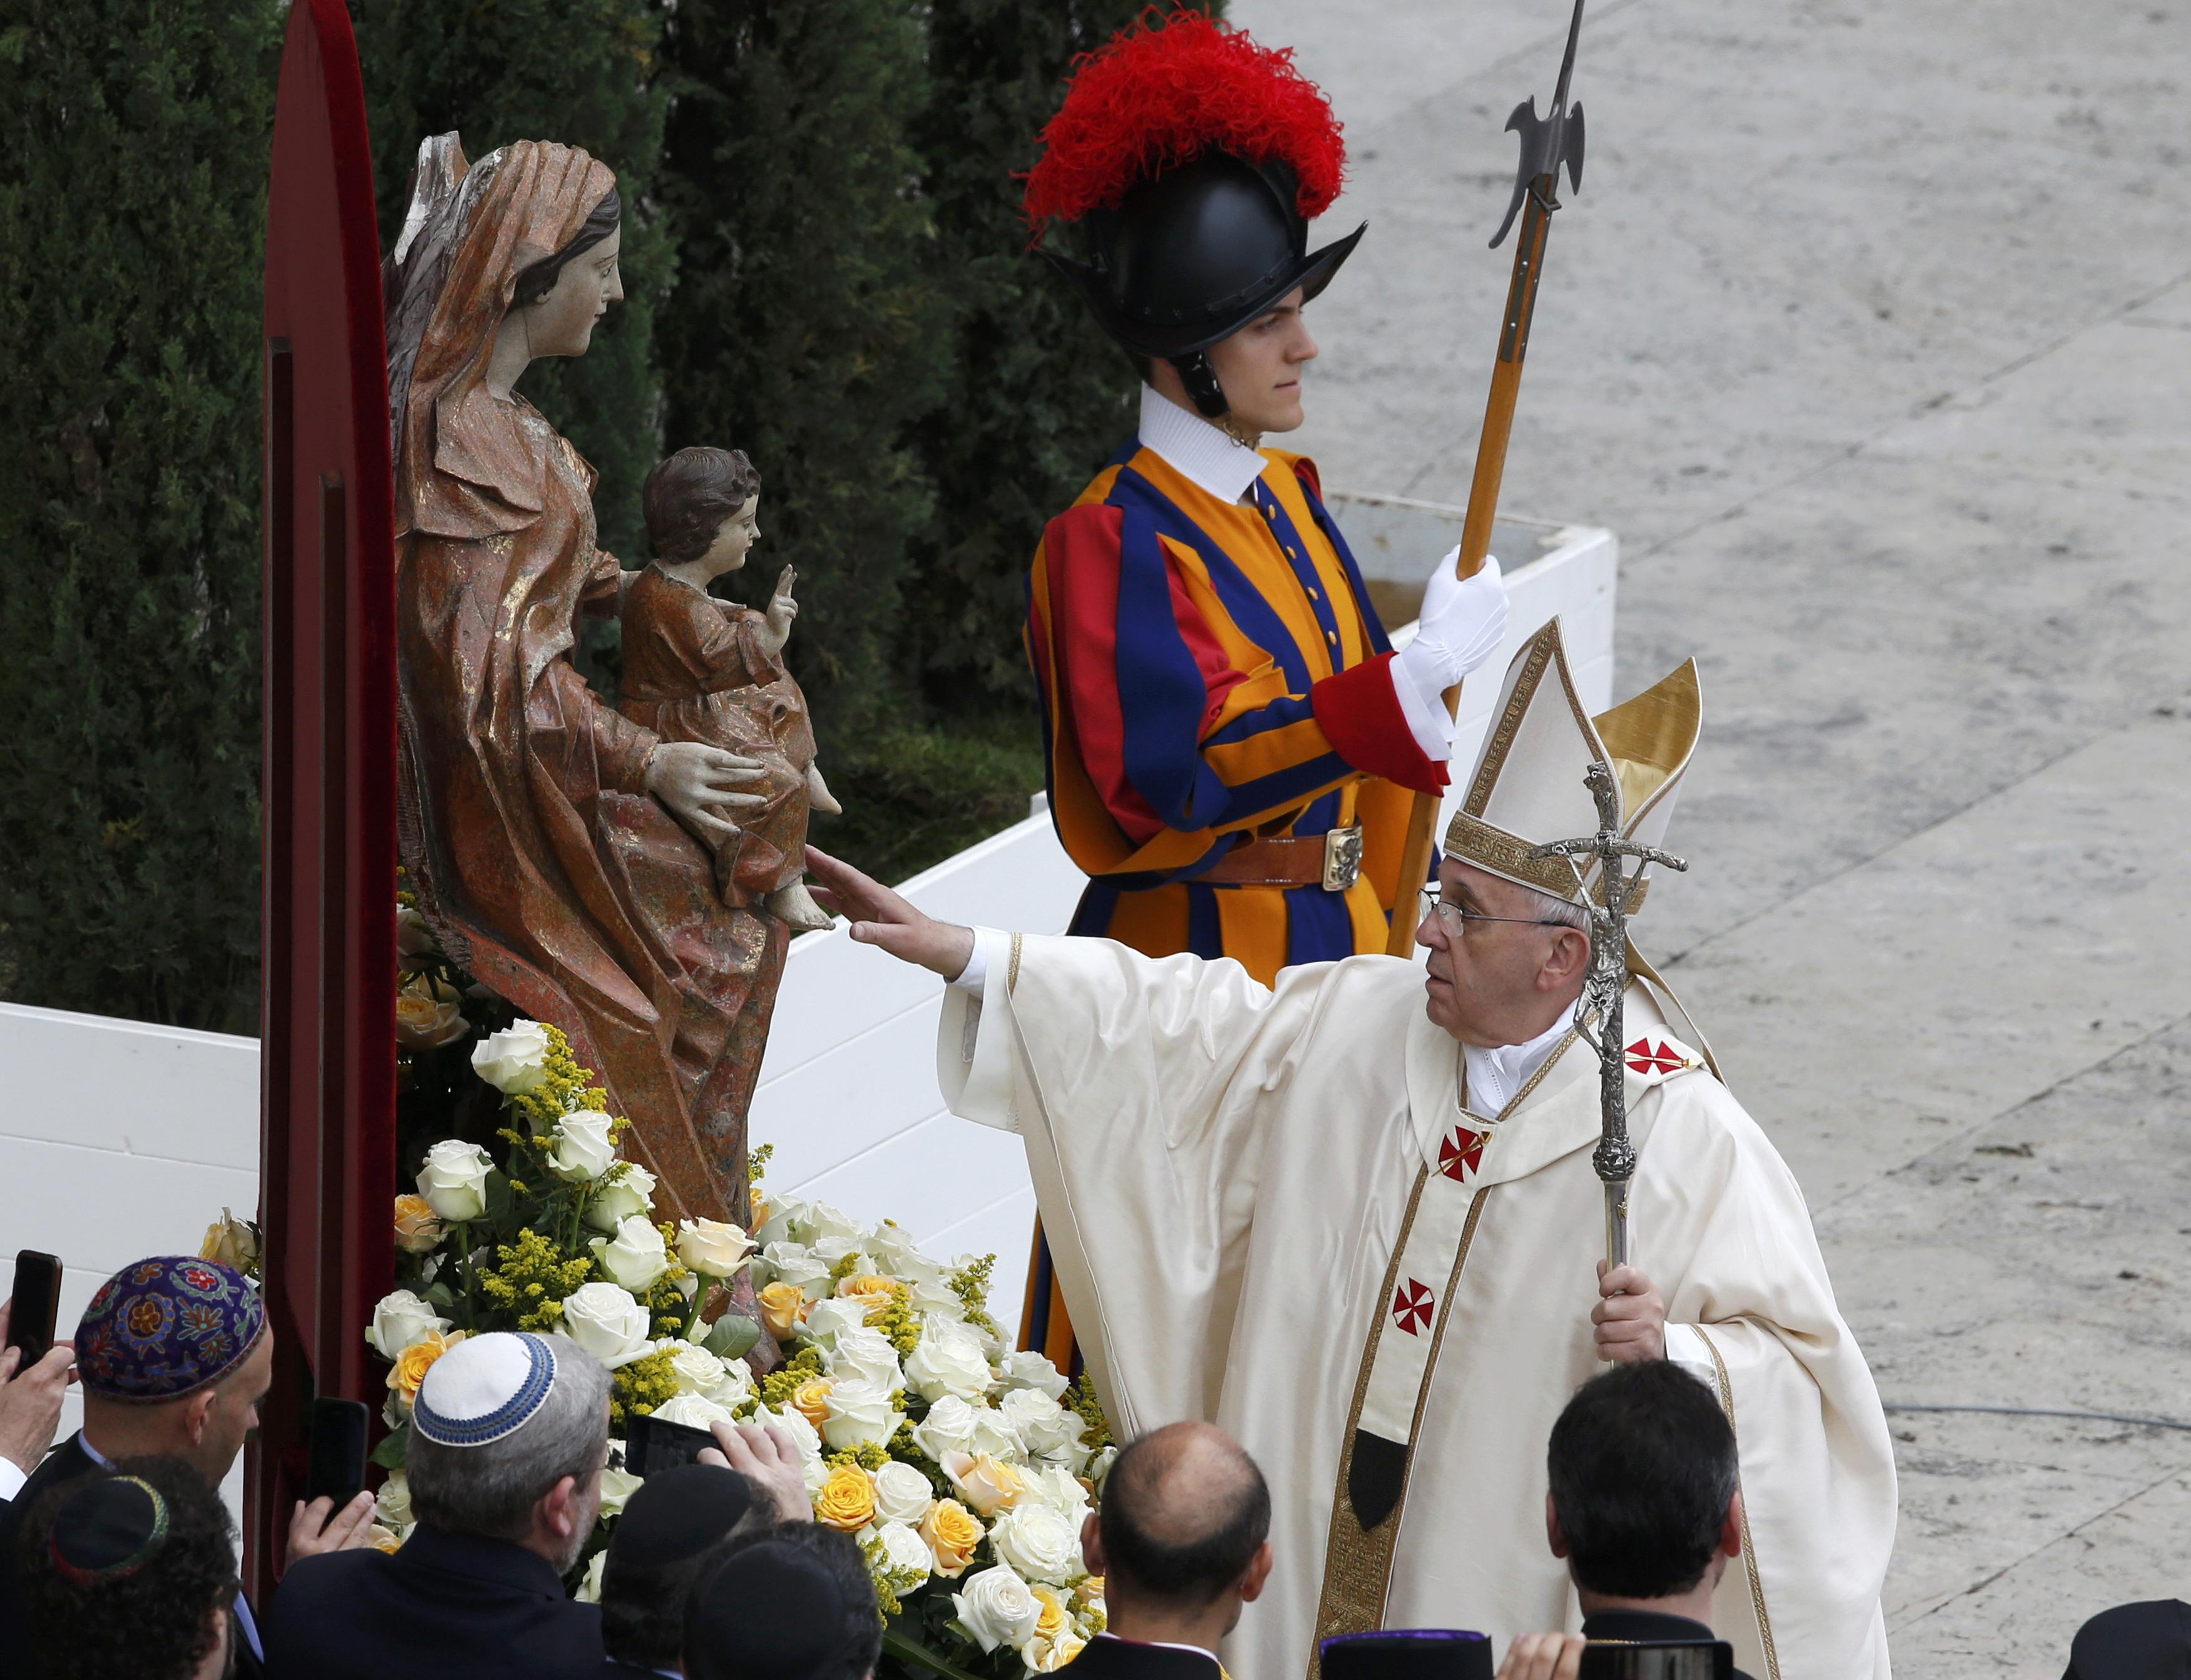 EN FOTOS: Ceremonia de canonización en la Plaza de San Pedro